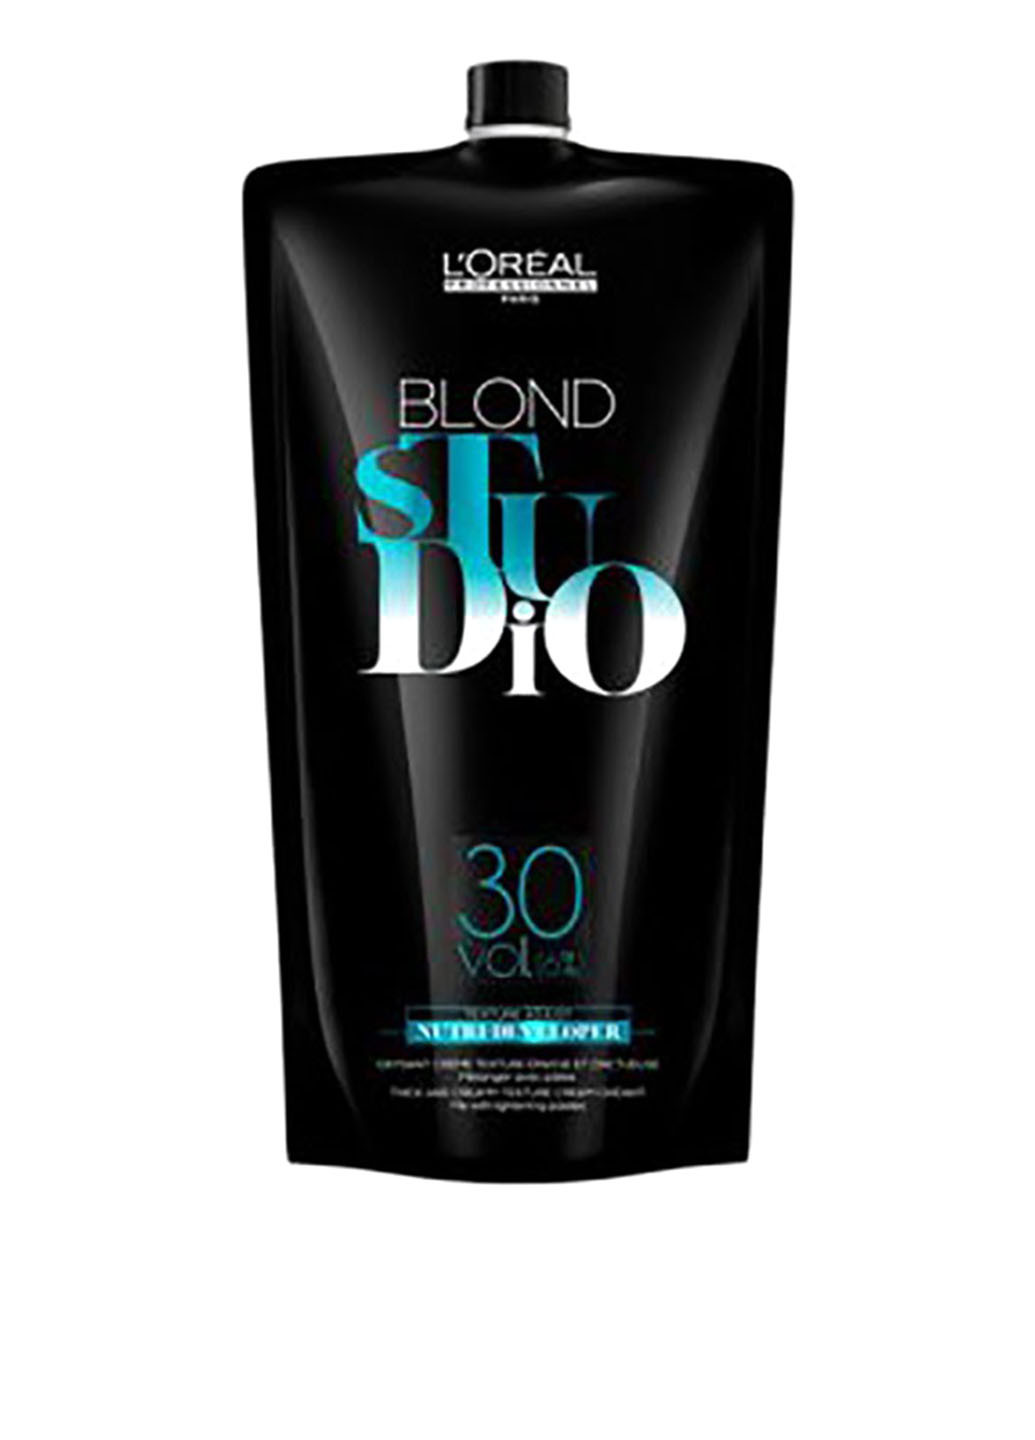 Питательный кремовый проявитель 9% Blond Studio Creamy Nutri-Developer Vol.30 1000 мл L'Oreal Professionnel (88095433)